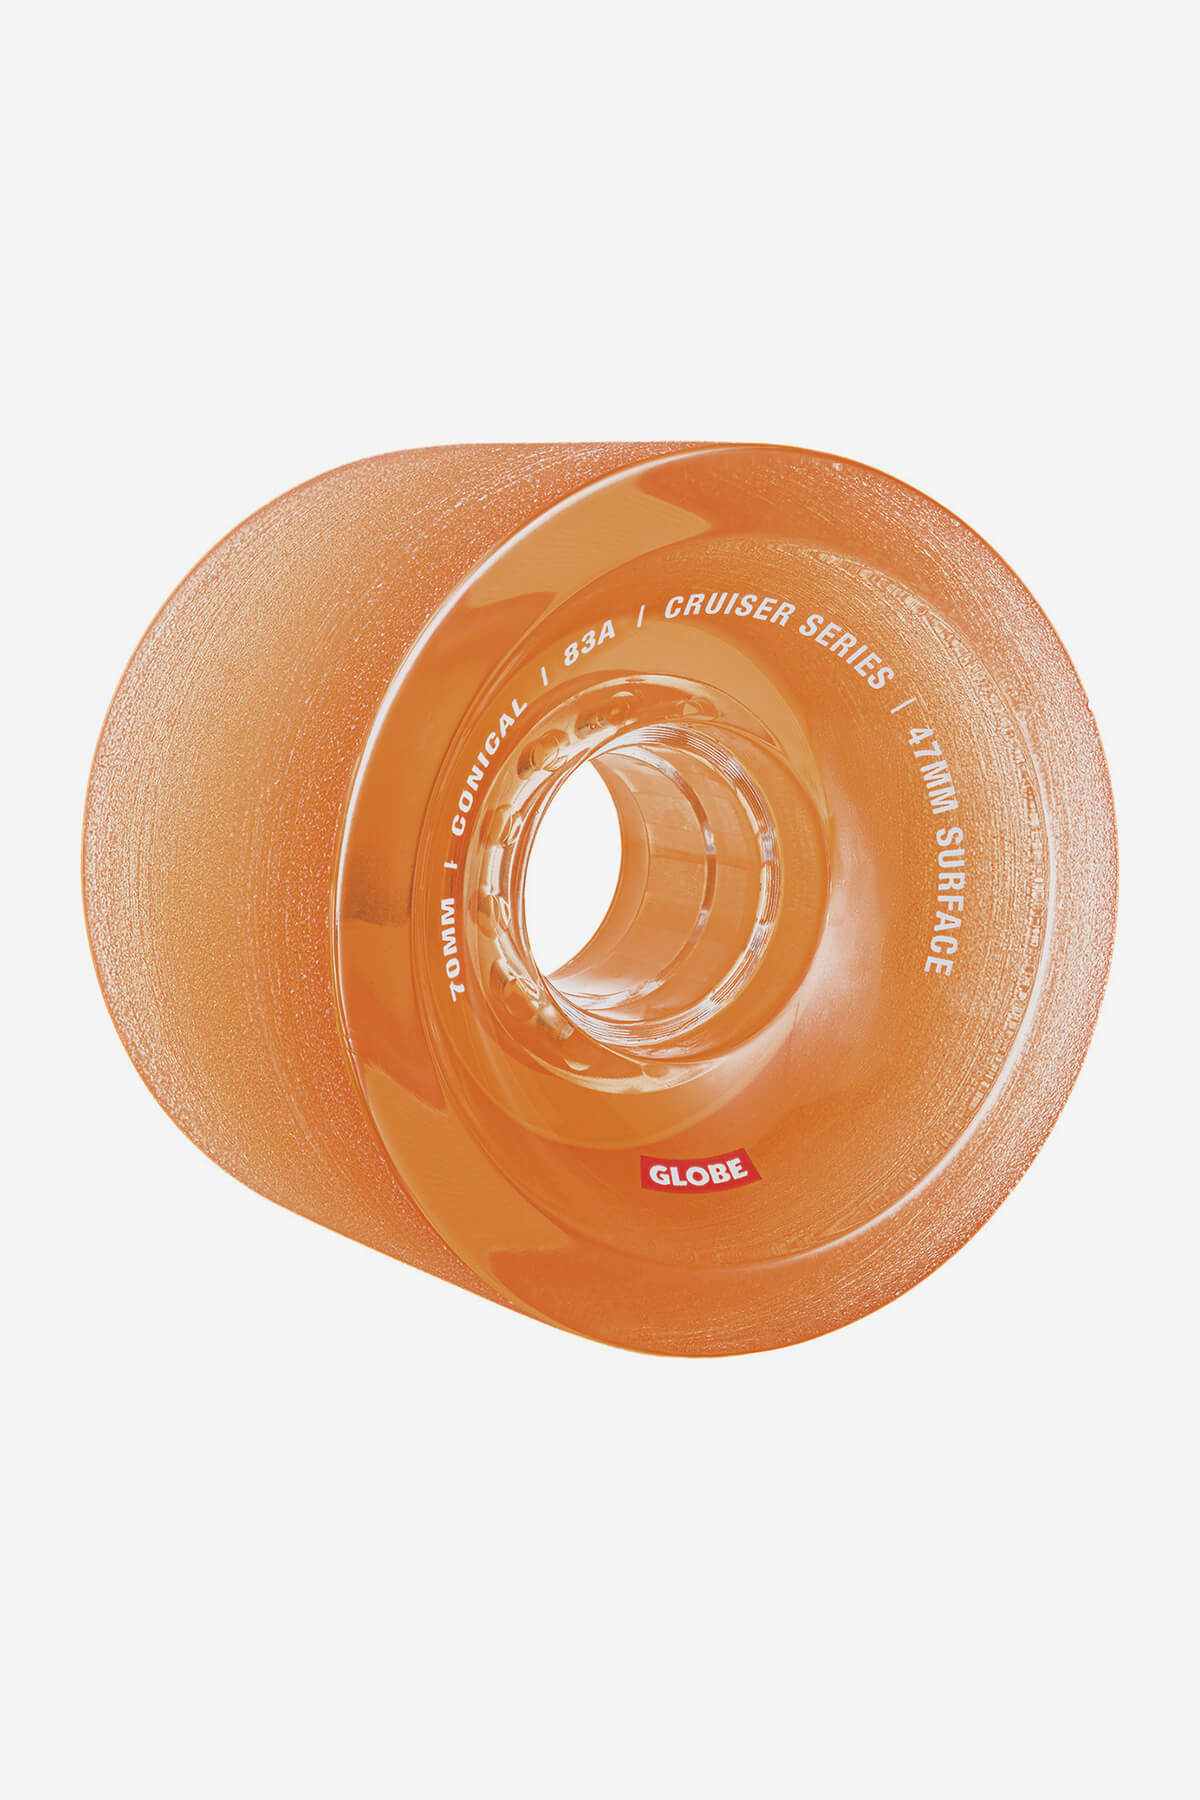 Globe Rollen Konisch Cruiser Skateboard  Wheel  70mm in Clear Amber